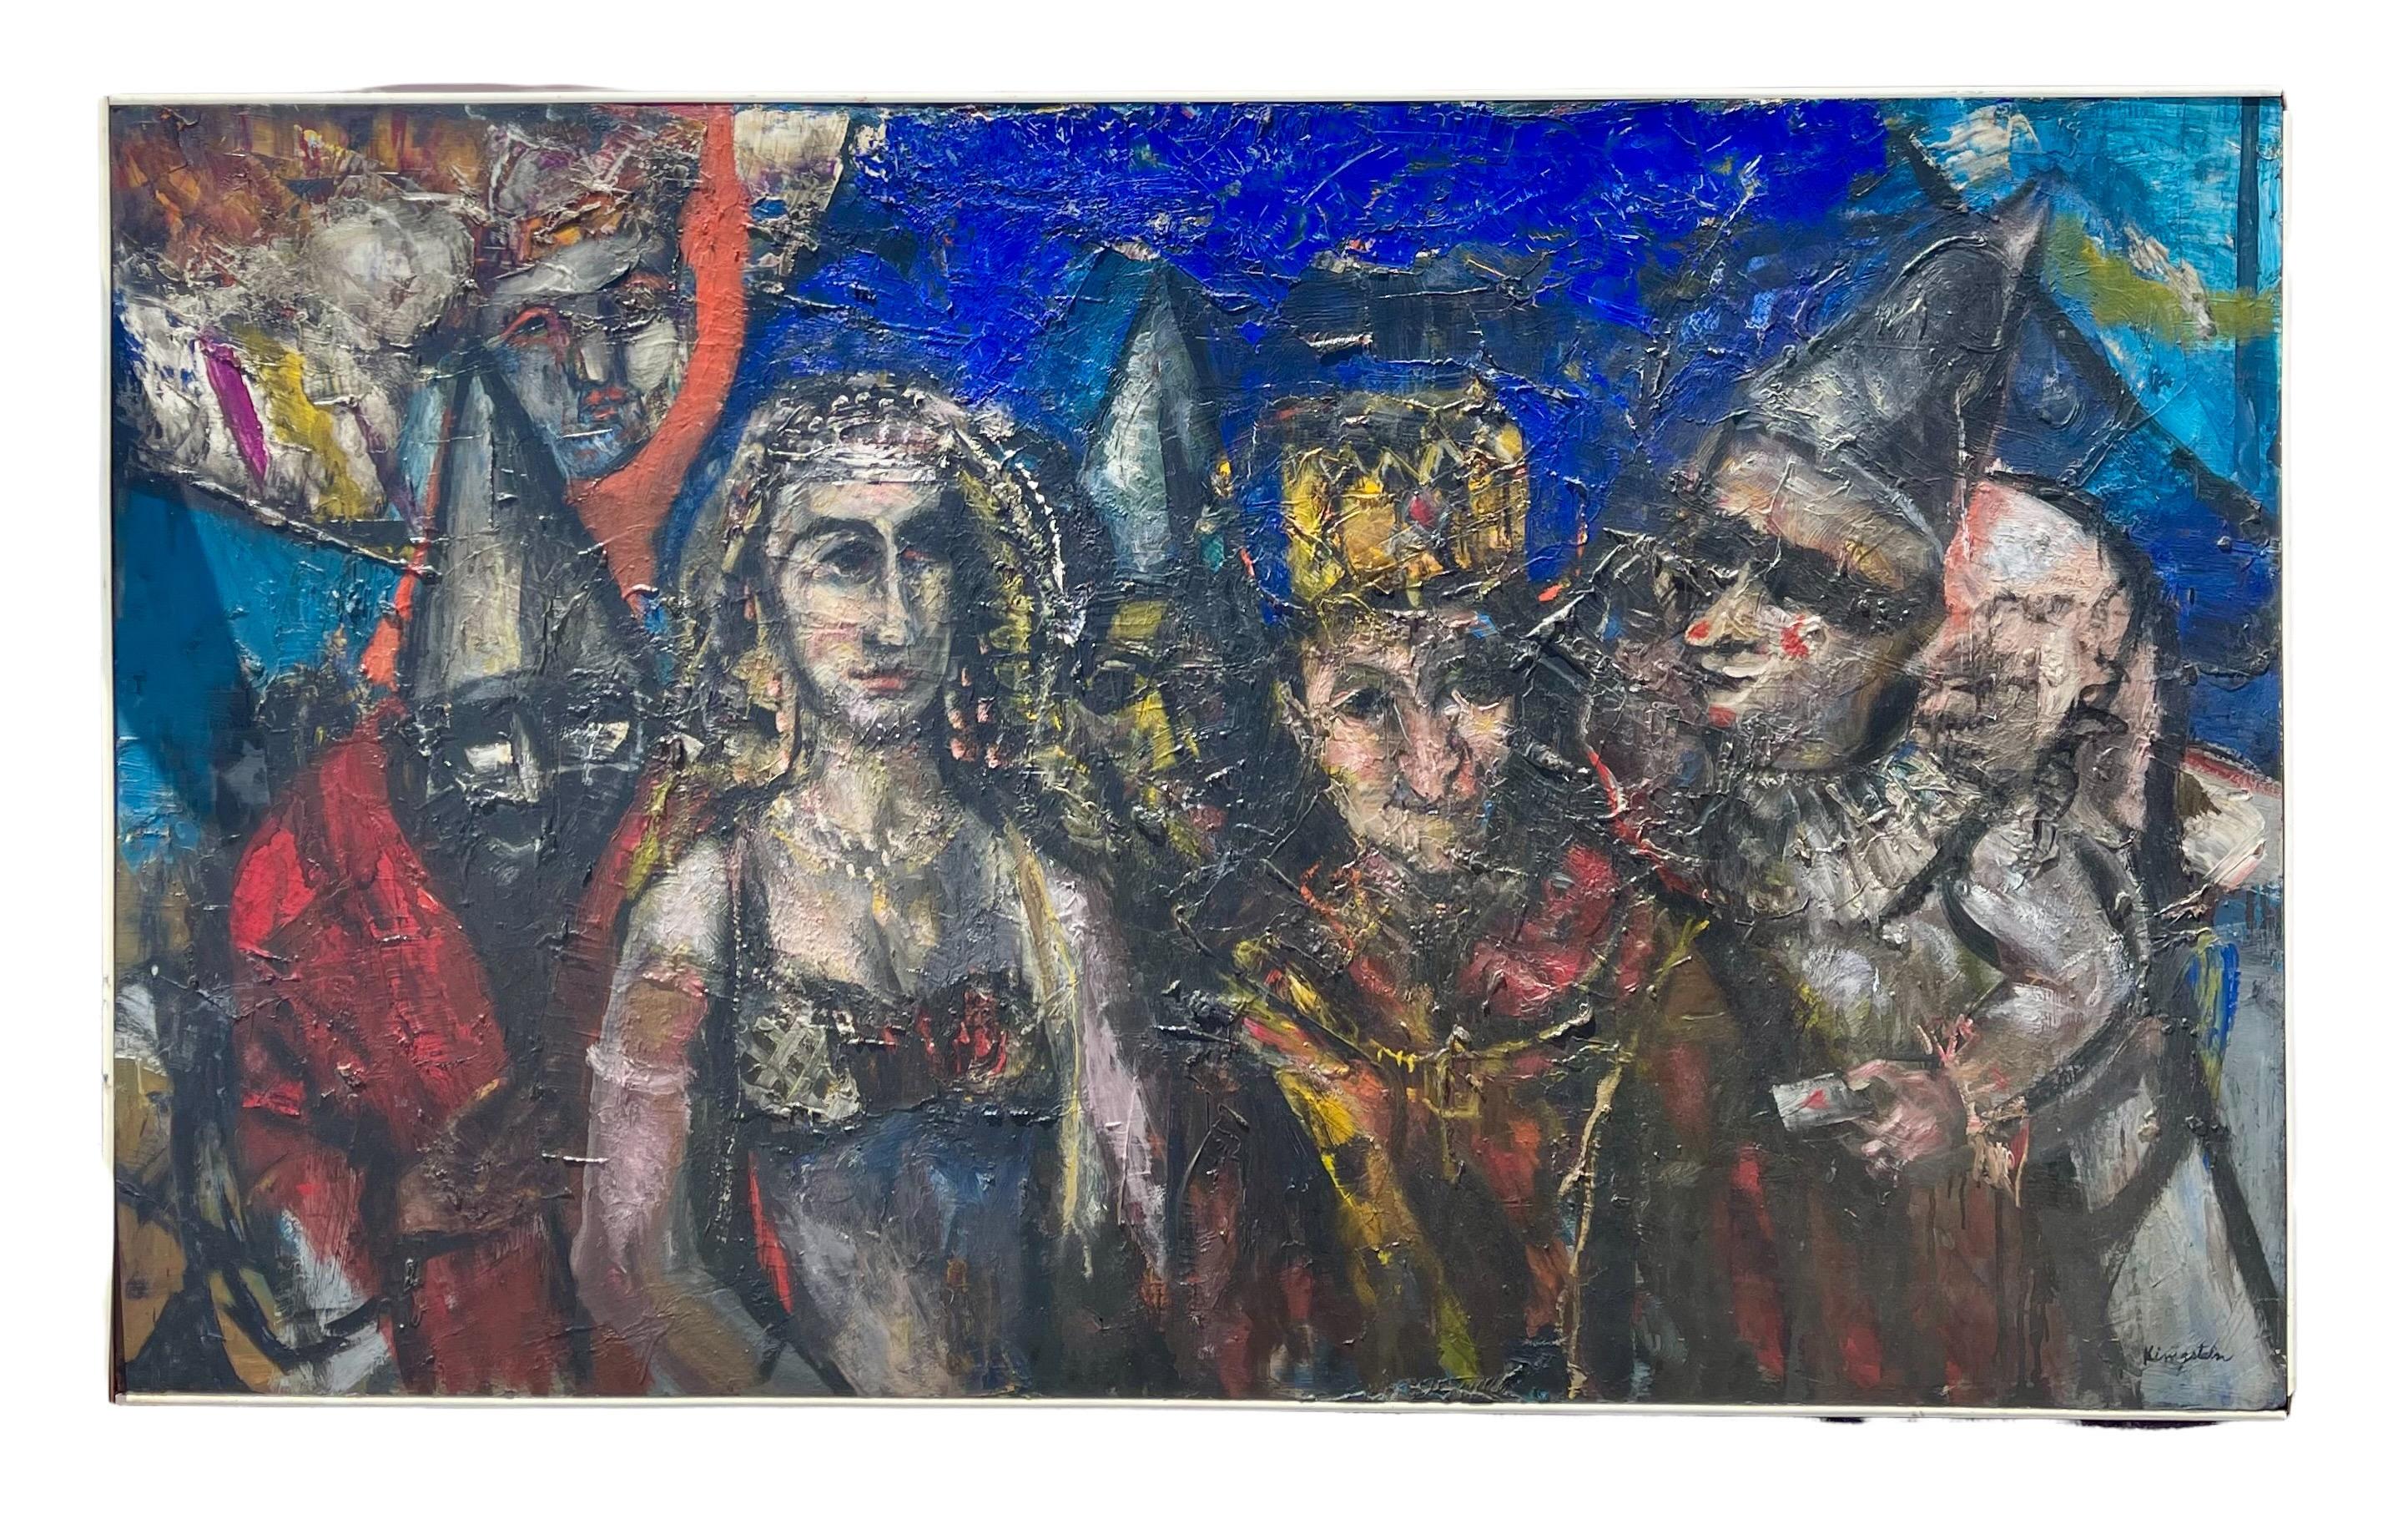 Le roi et la reine avec les clowns et les bouffons. Peinture audacieuse, colorée, expressionniste et magistrale.

Jonah Kinigstein (né en 1923) est un peintre américain d'après-guerre et contemporain. Il travaille dans un style expressionniste